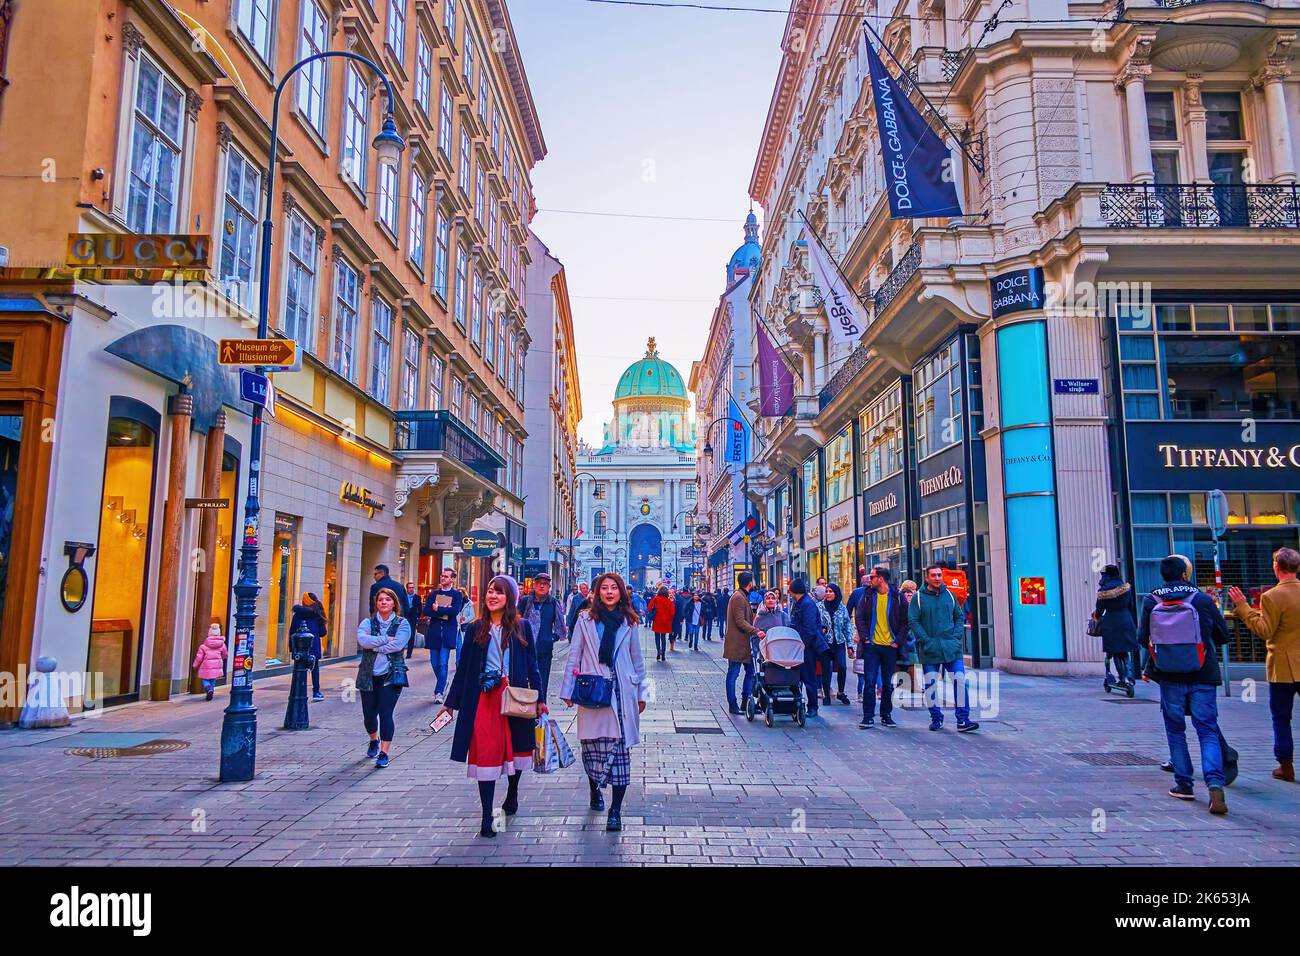 WIEN, ÖSTERREICH - 17. FEBRUAR 2019: Die überfüllte Kohlmarkt-Einkaufsstraße am Abend, am 17. Februar in Wien, Österreich Stockfoto